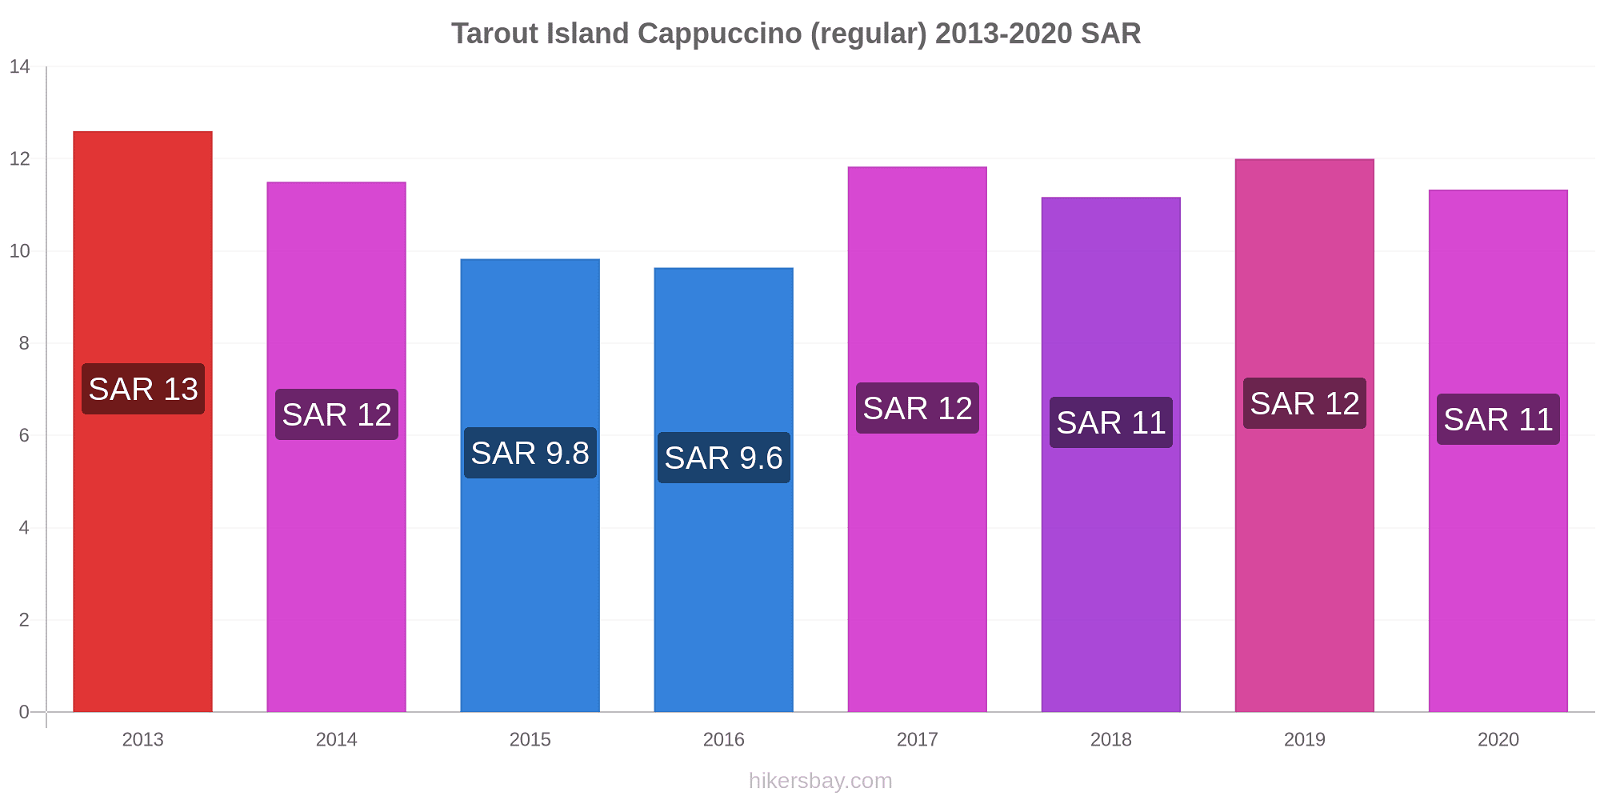 Tarout Island price changes Cappuccino (regular) hikersbay.com